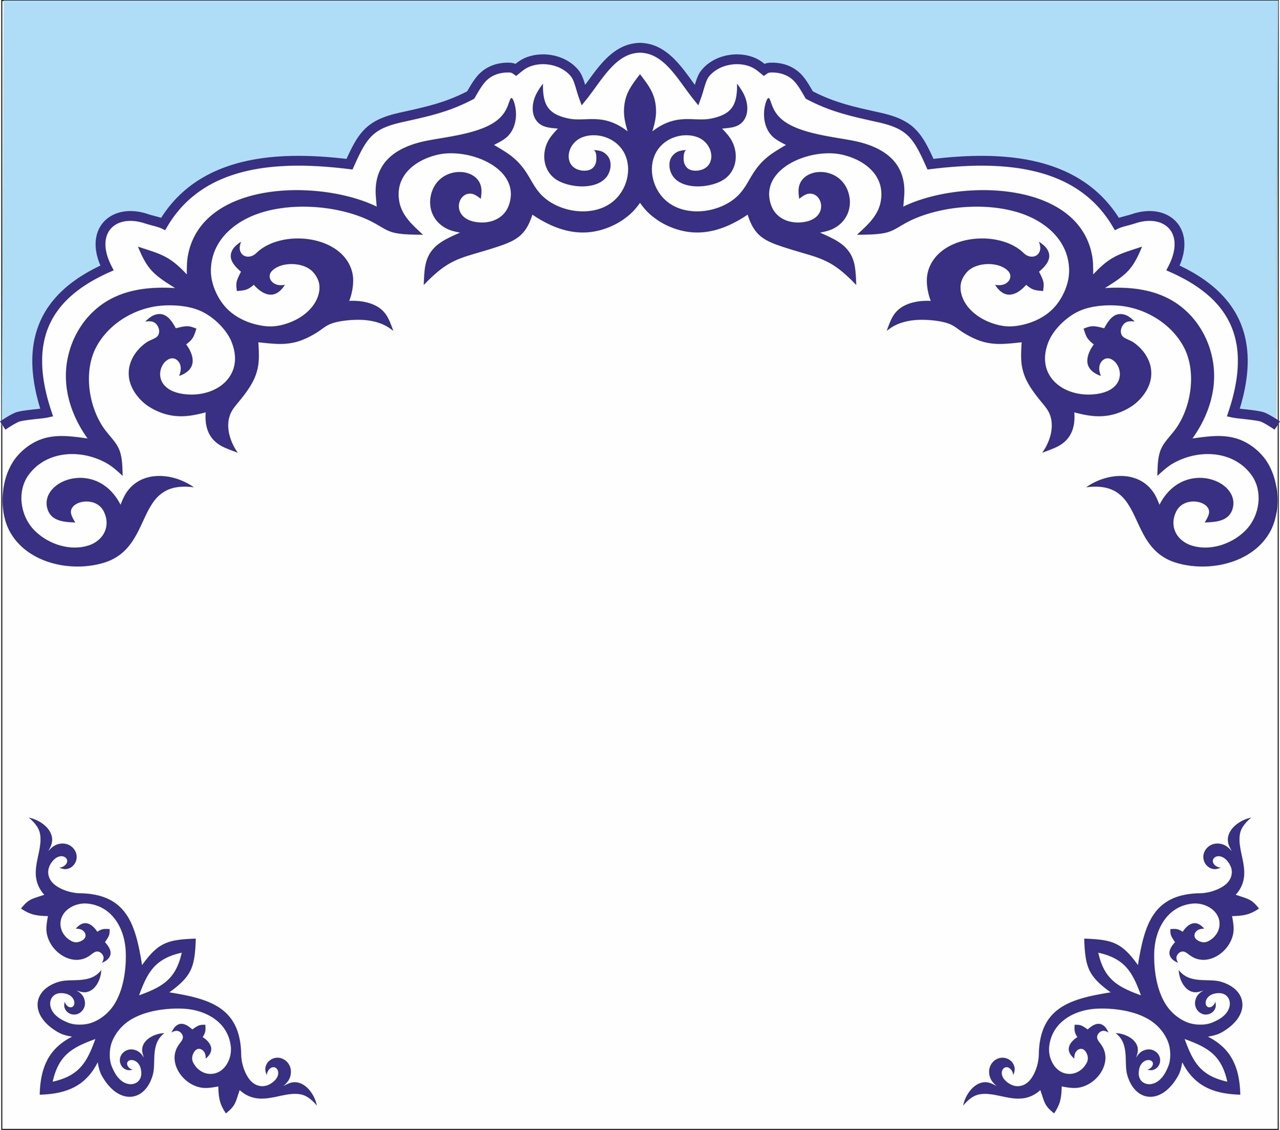 Казахский орнамент на белом фоне